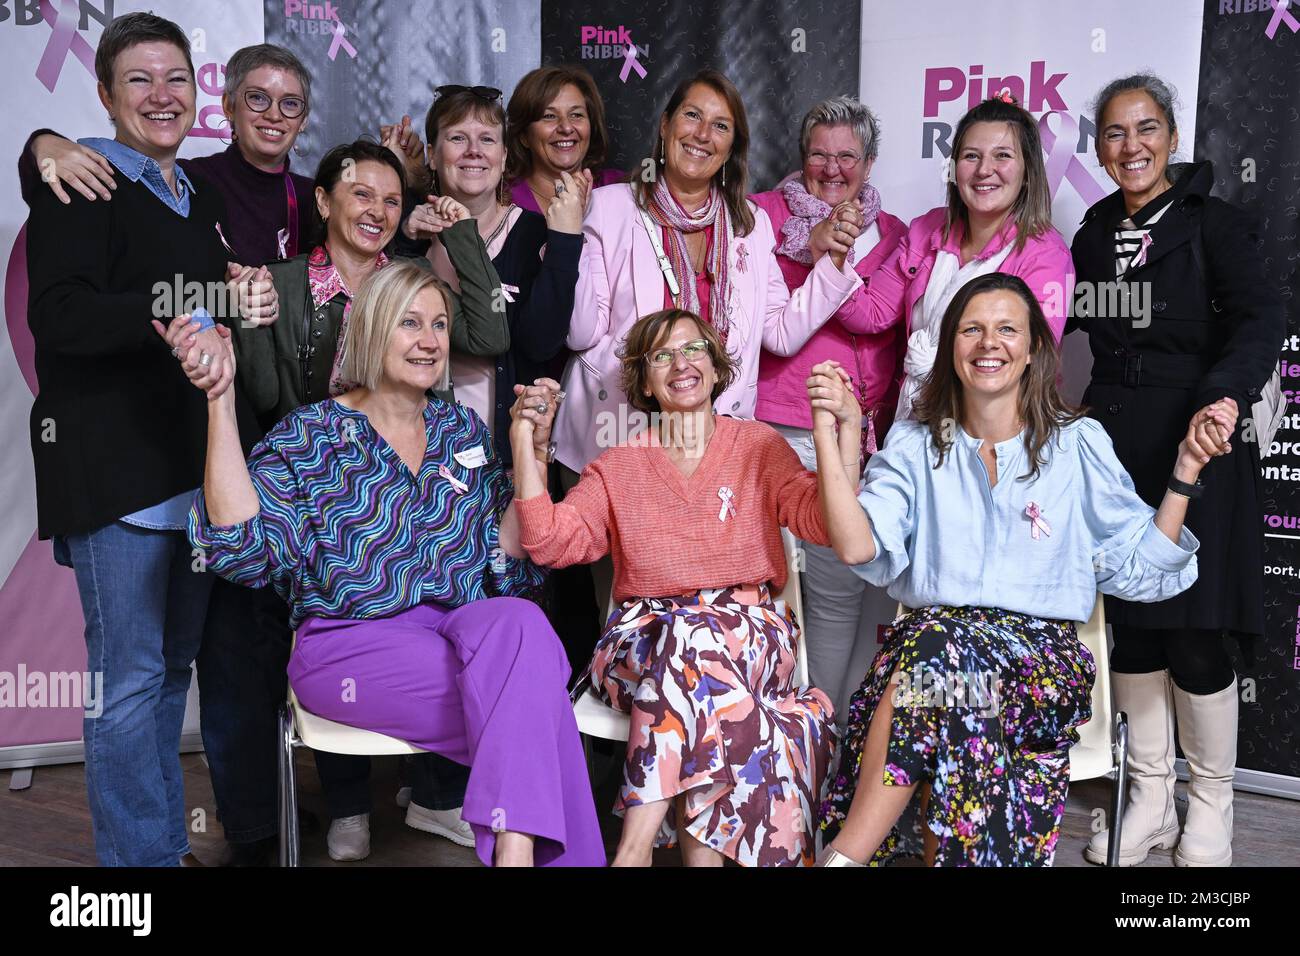 L'illustration montre une photo de groupe lors d'une conférence de presse nationale du ruban rose, à Bruxelles, le mardi 20 septembre 2022. Le ruban rose est un symbole international de la sensibilisation au cancer du sein. BELGA PHOTO LAURIE DIEFFEMBACQ Banque D'Images